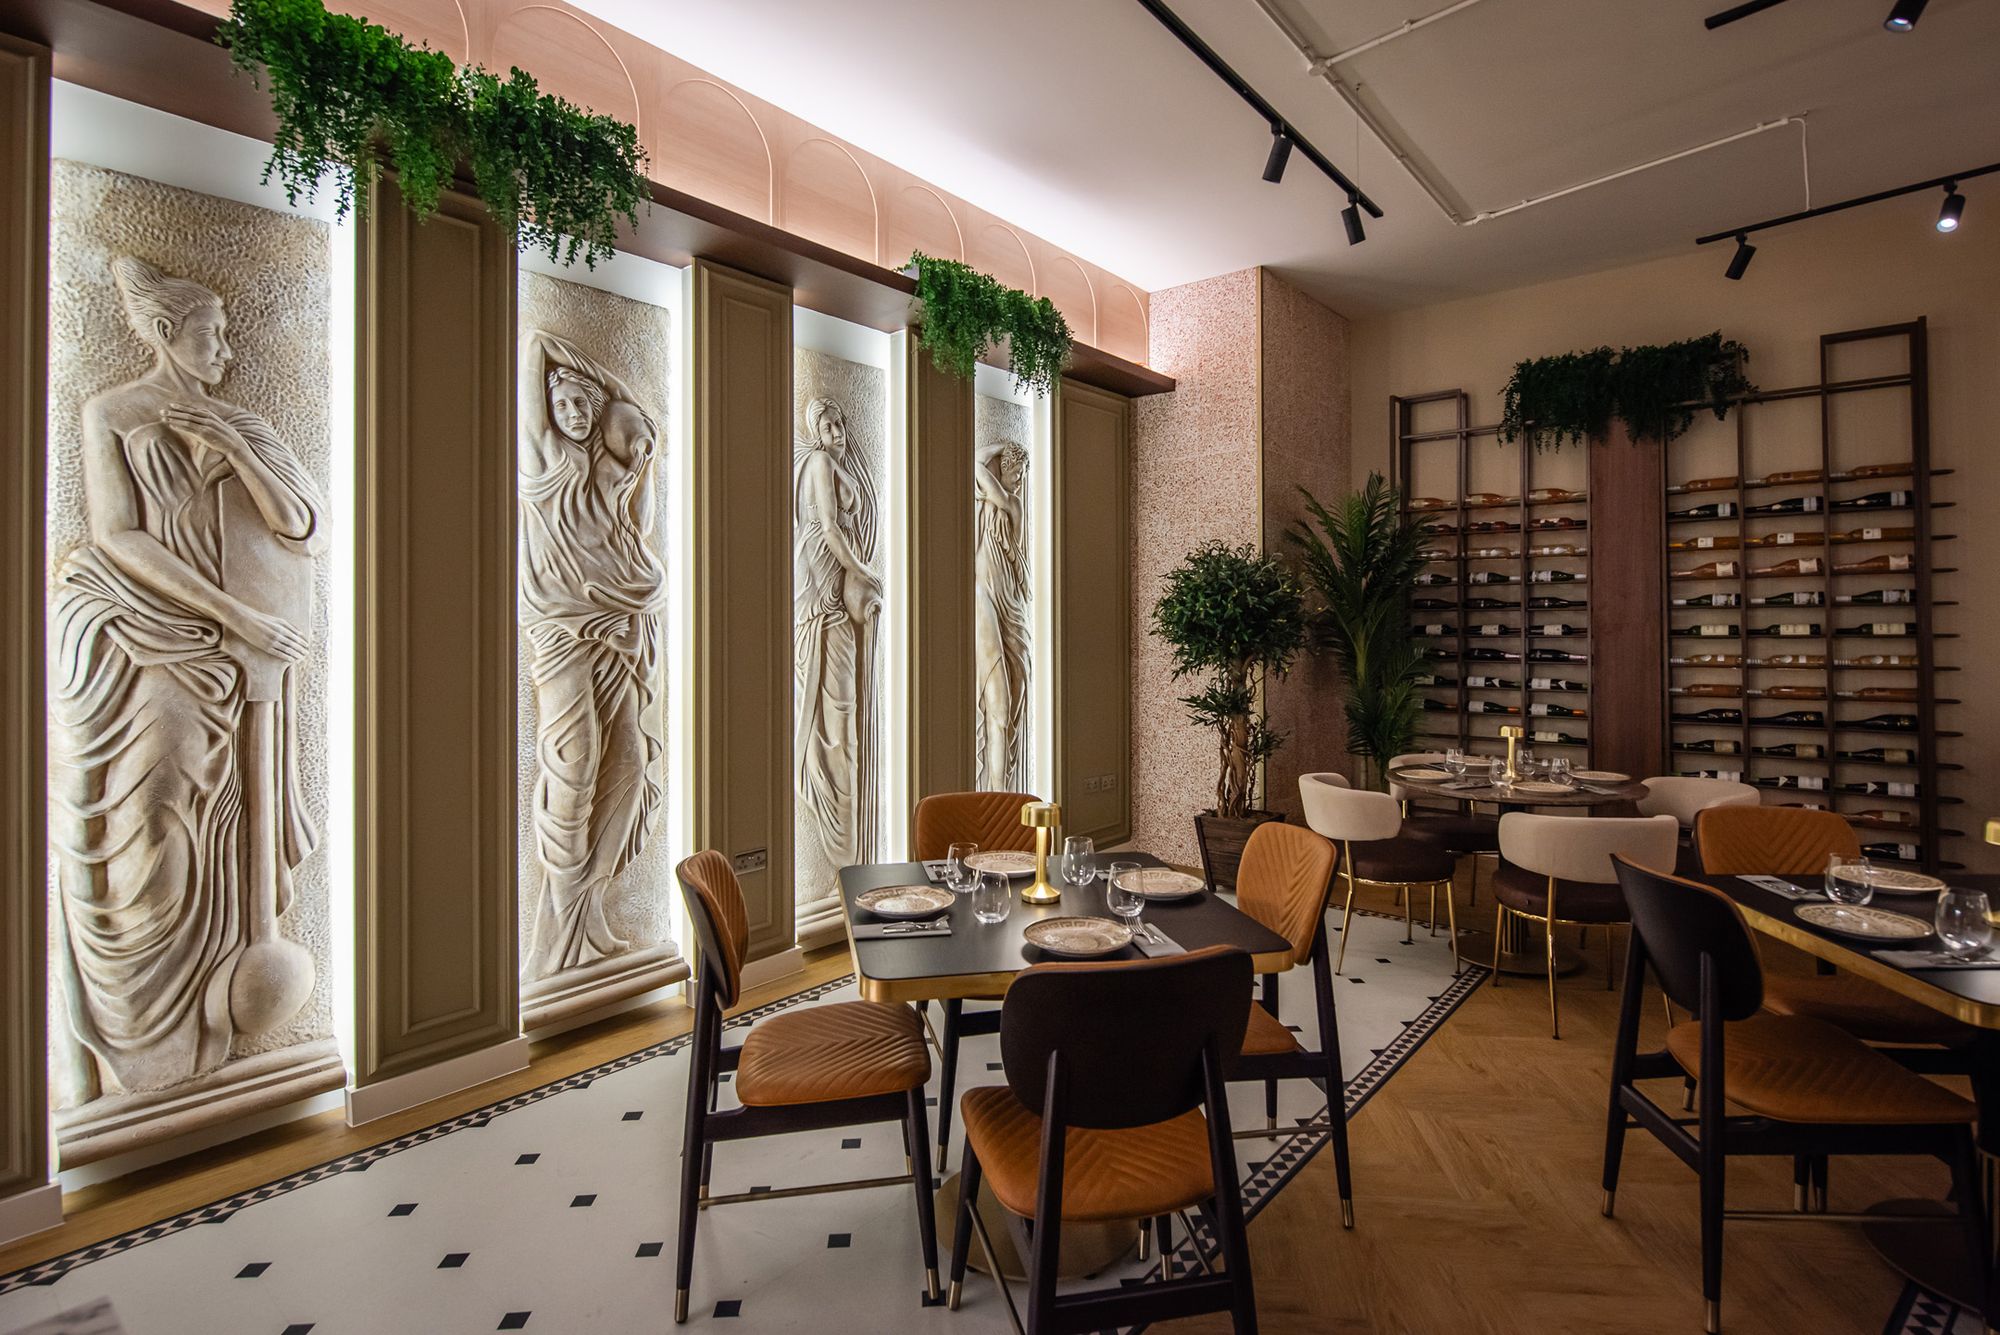 图片[9]|Efes高级餐厅|ART-Arrakis | 建筑室内设计的创新与灵感